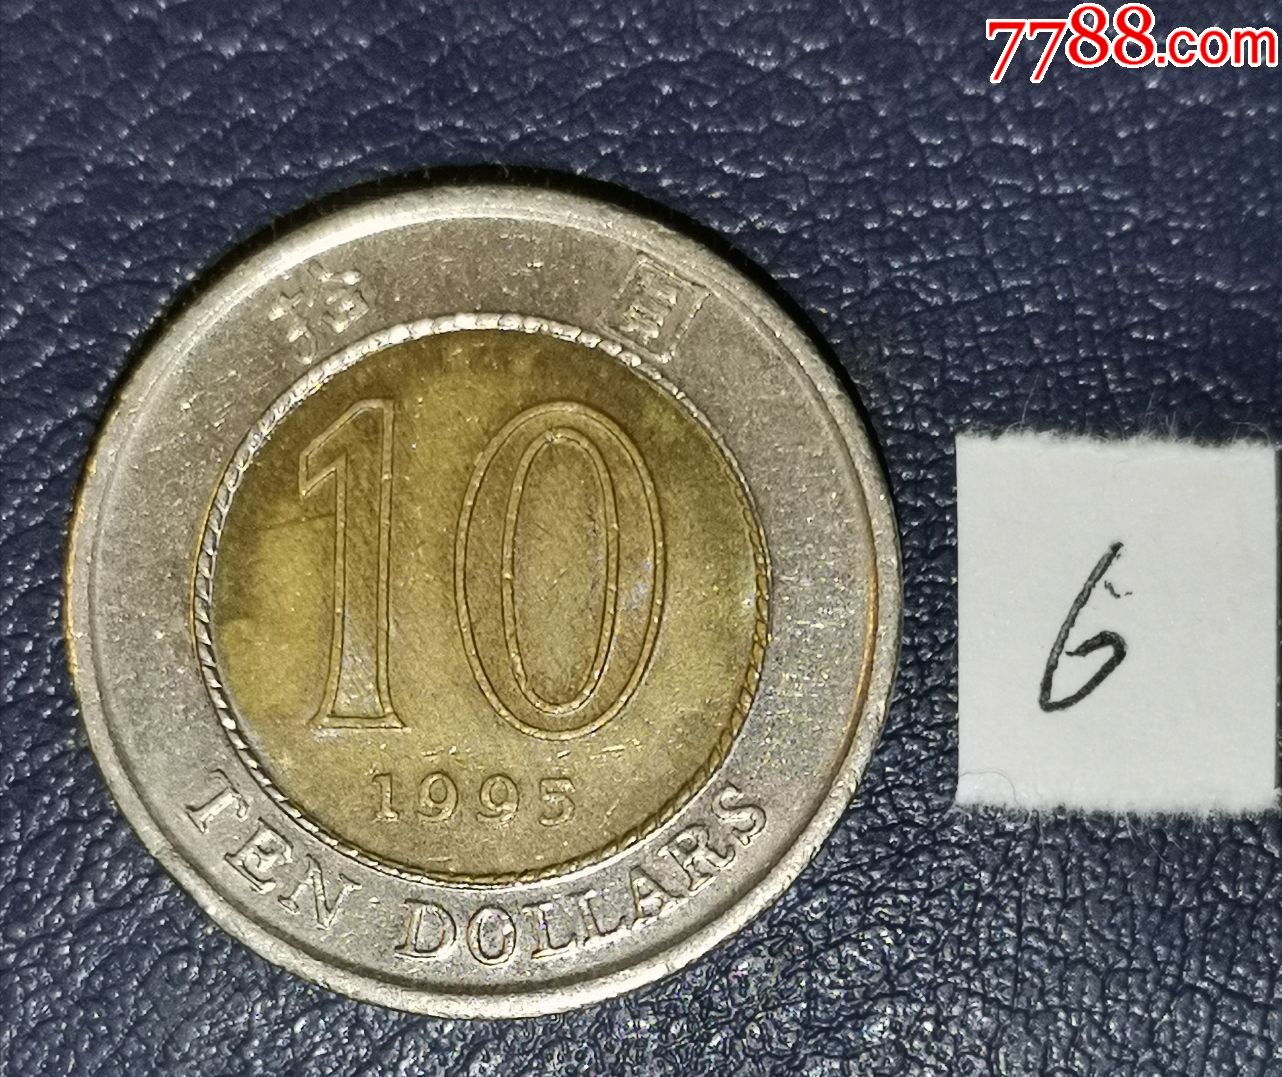 旧版10元港币收藏价格表(老版港币10元纸币值多少钱)